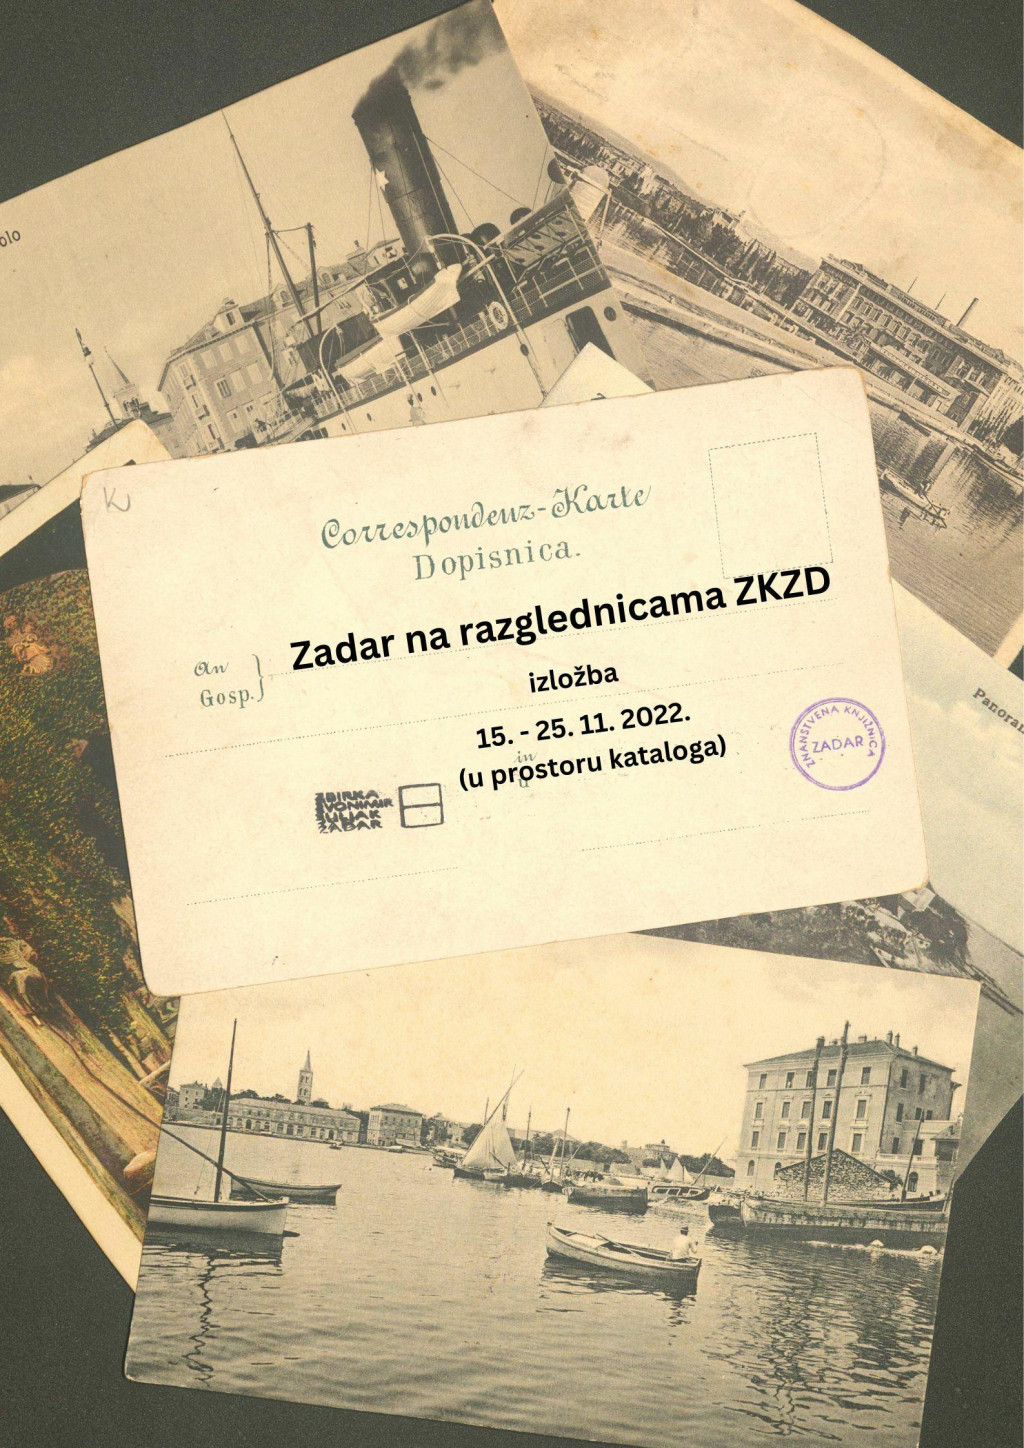 &lt;p&gt;Zadar na razglednicama ZKZD - 1&lt;/p&gt;